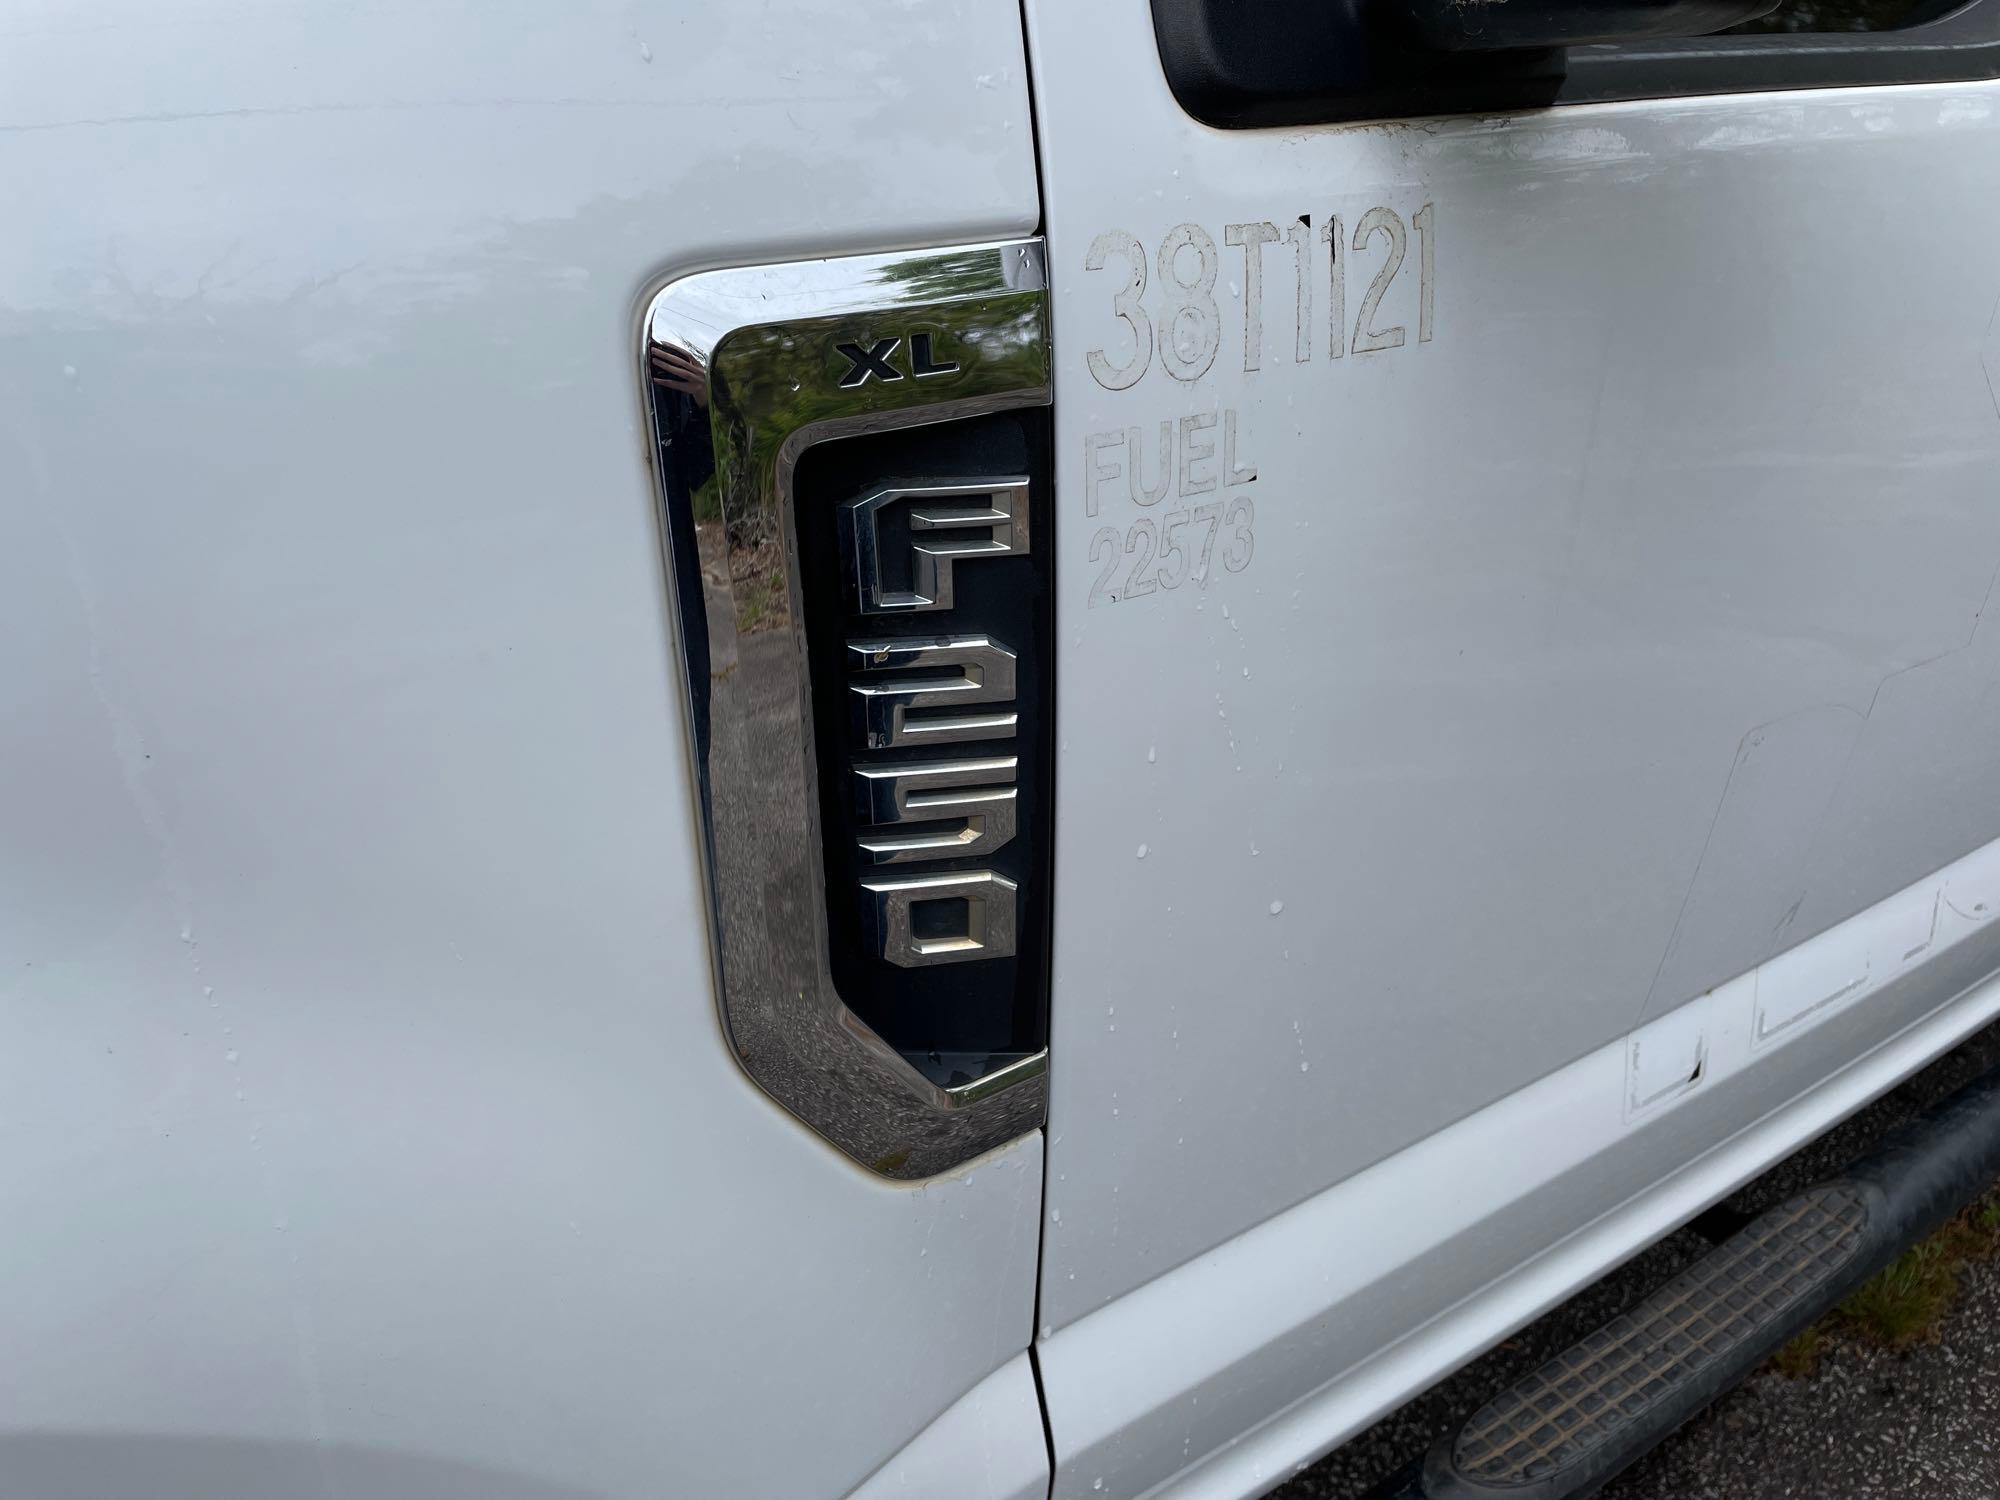 2018 Ford F-250 Pickup Truck, VIN # 1FT7W2B60JEC45668